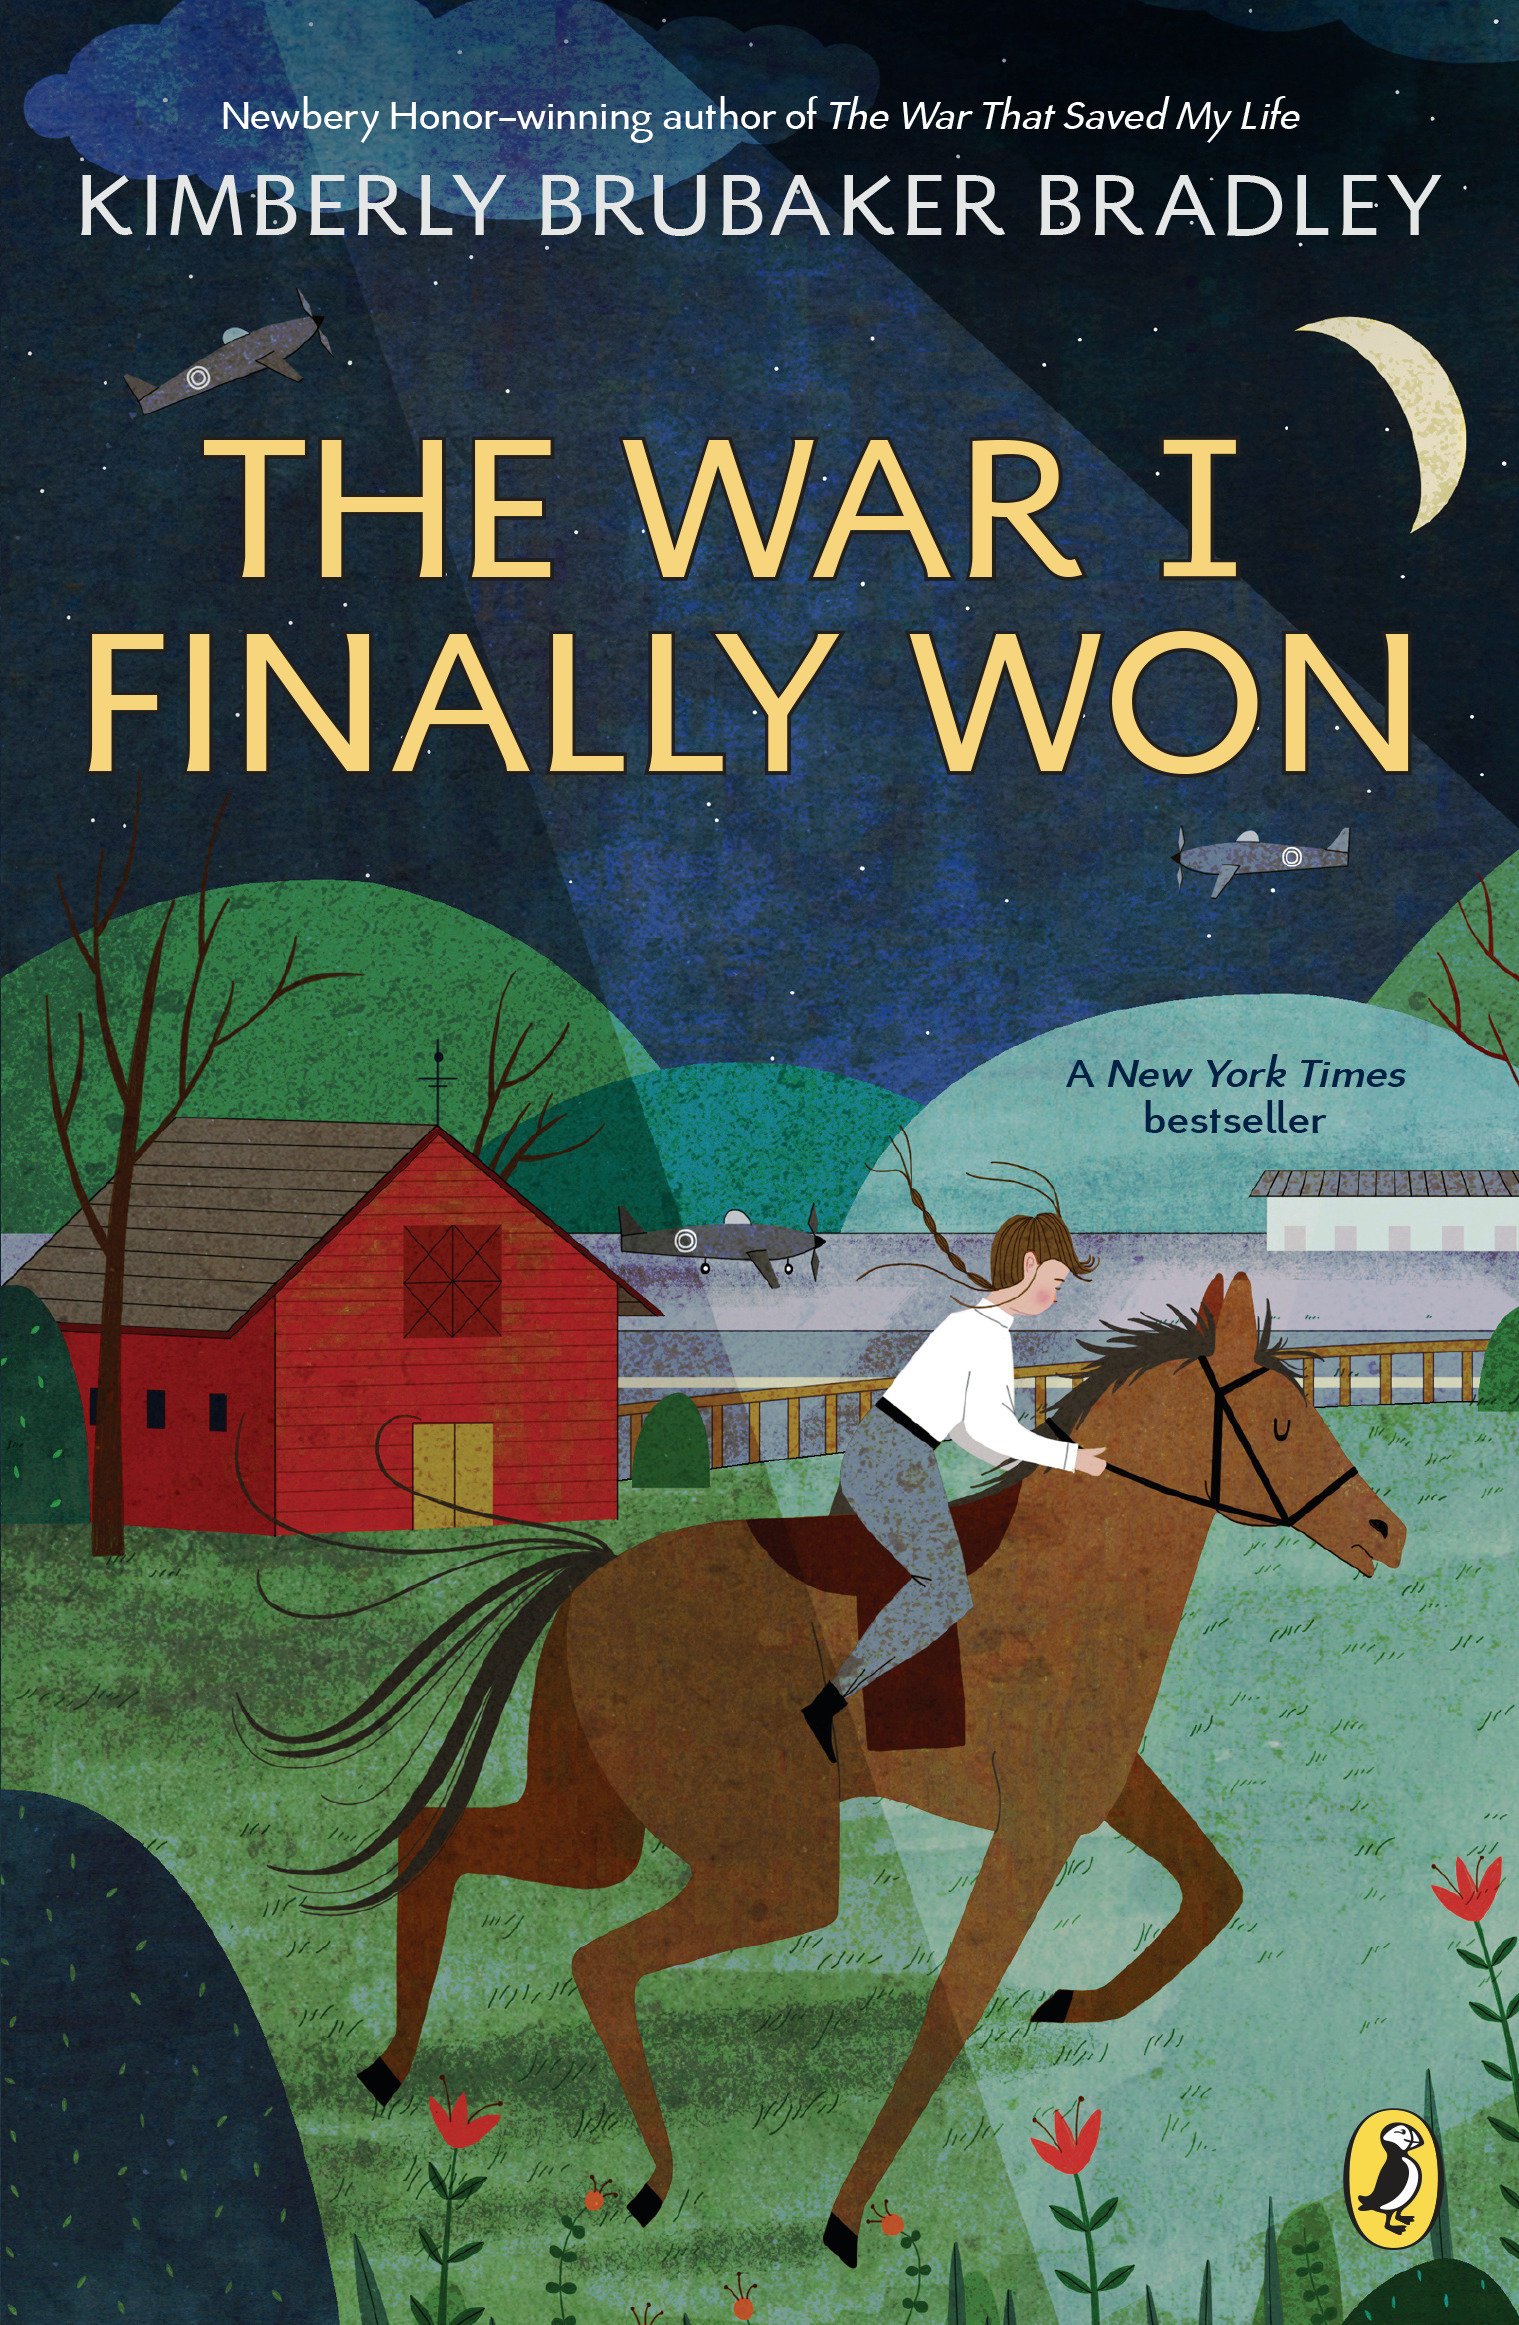 The War I Finally Won by Bradley, Kimberly Brubaker Review/Summary